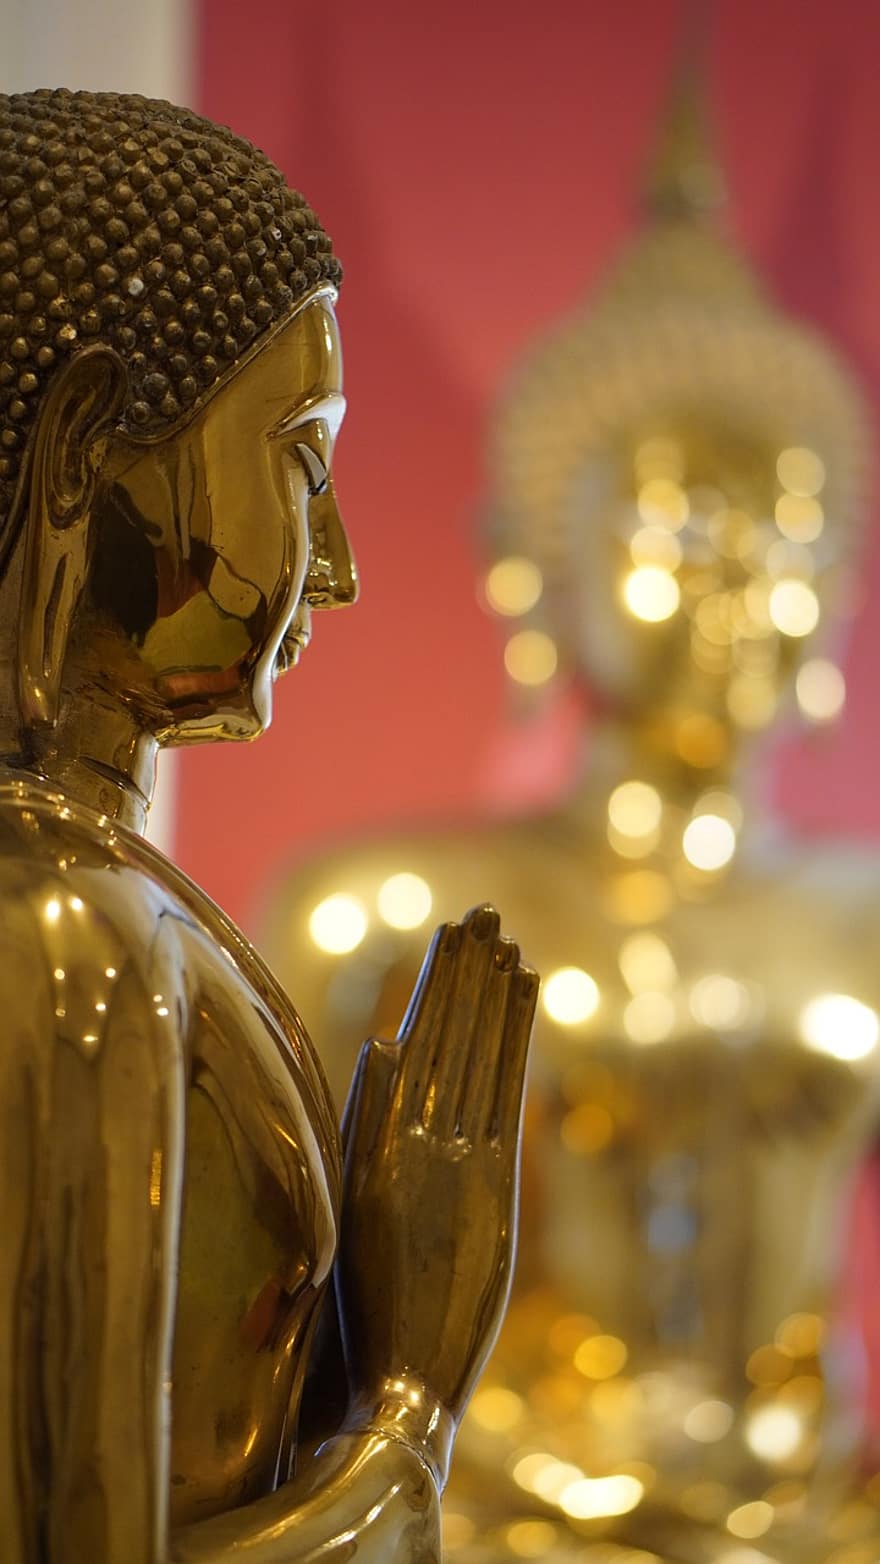 मंदिर, बुद्धा, प्रतिमा, बुद्ध धर्म, बौद्ध, मूर्ति, पवित्र, धर्म, आध्यात्मिकता, थाईलैंड